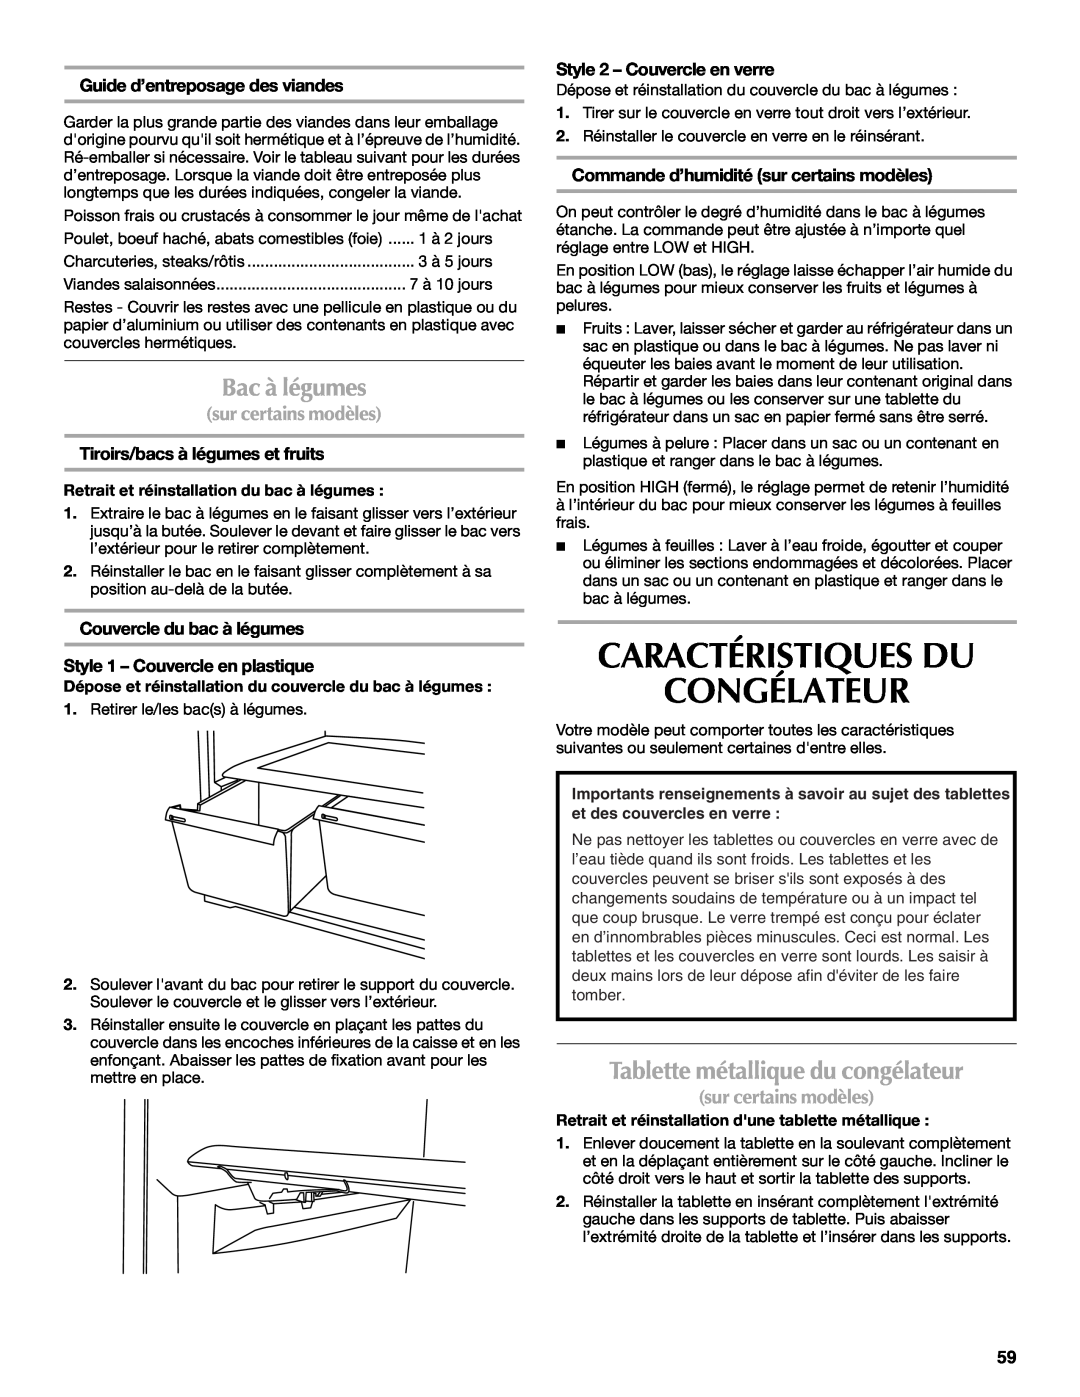 Maytag W10359302A Caractéristiques Du Congélateur, Bac à légumes, Tablette métallique du congélateur, sur certains modèles 